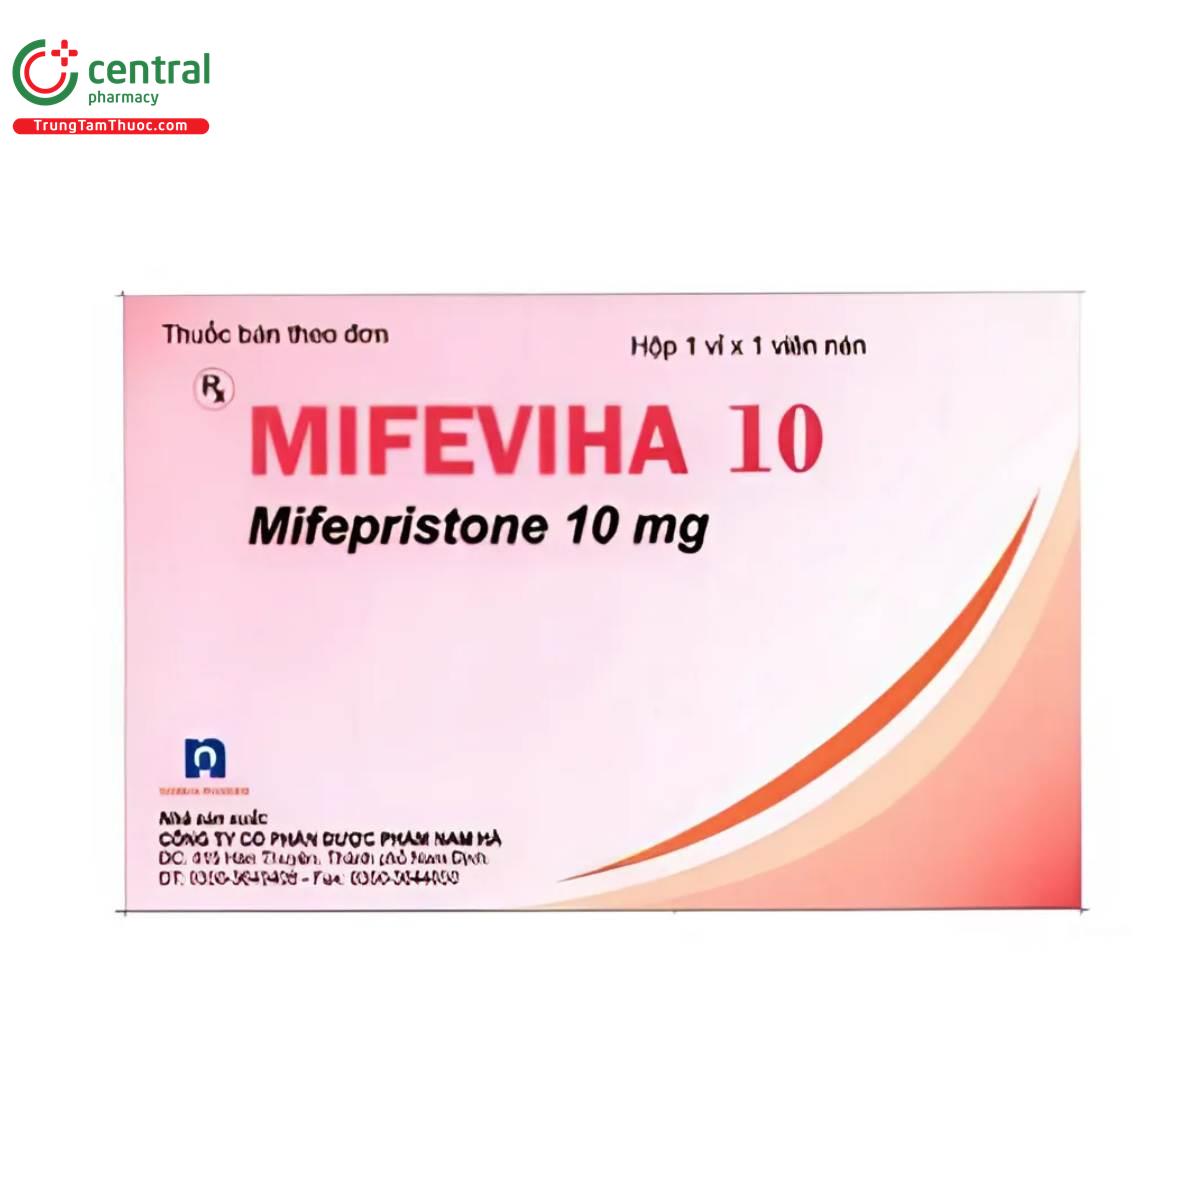 mifeviha 10 3 E1566